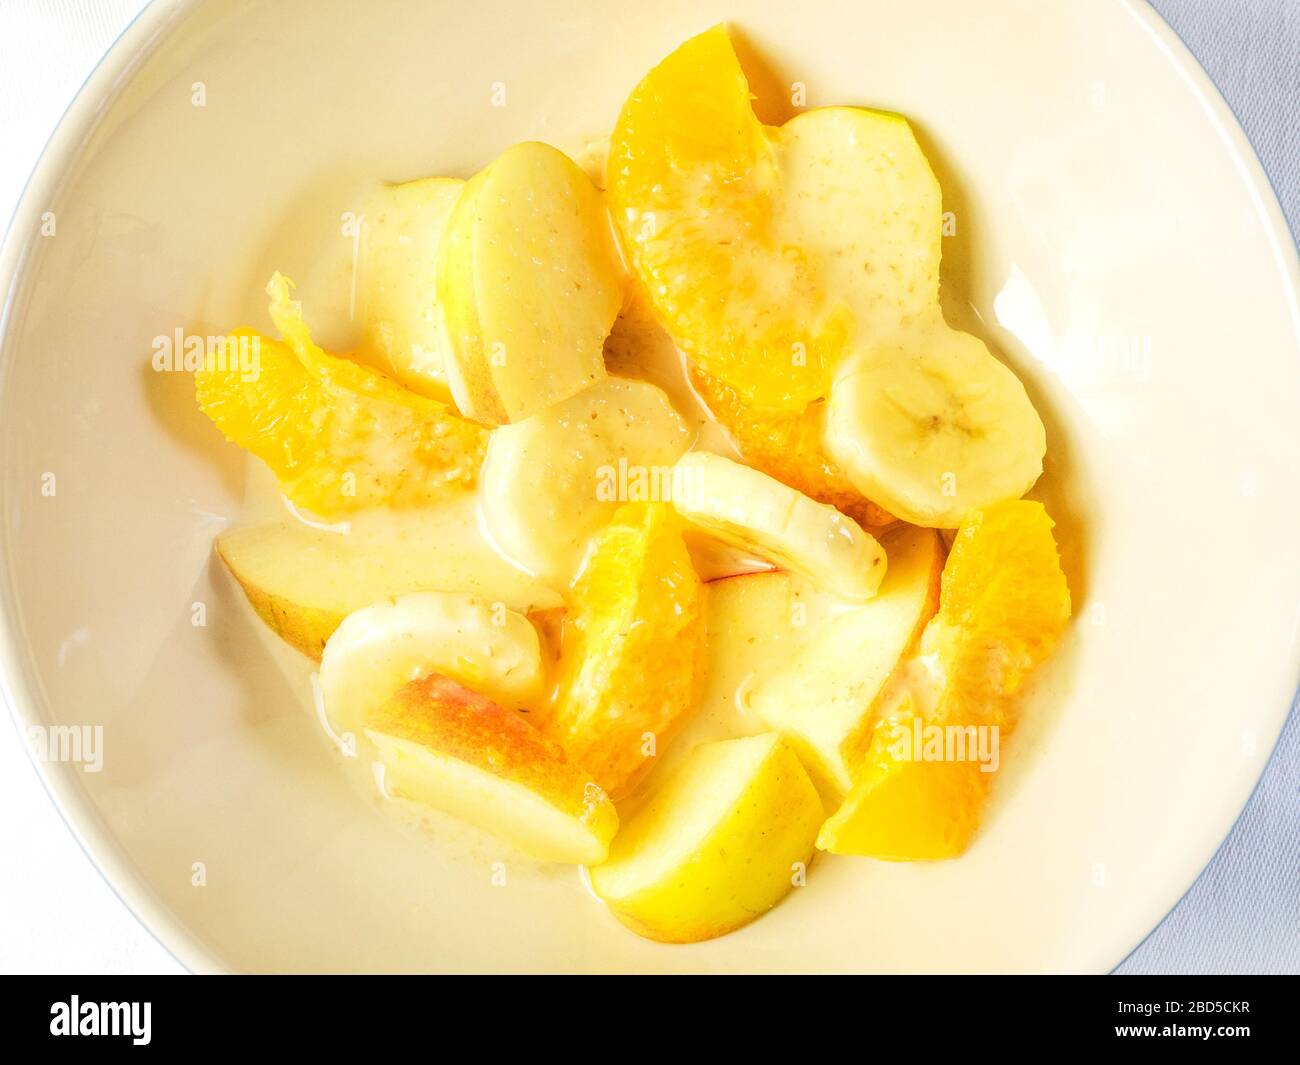 Eine Schüssel Obstsalat mit orangefarbenen Segmenten und in Scheiben geschnittenen Äpfeln und Bananen mit Hafercreme von oben auf einem weißen Tischtuch Stockfoto